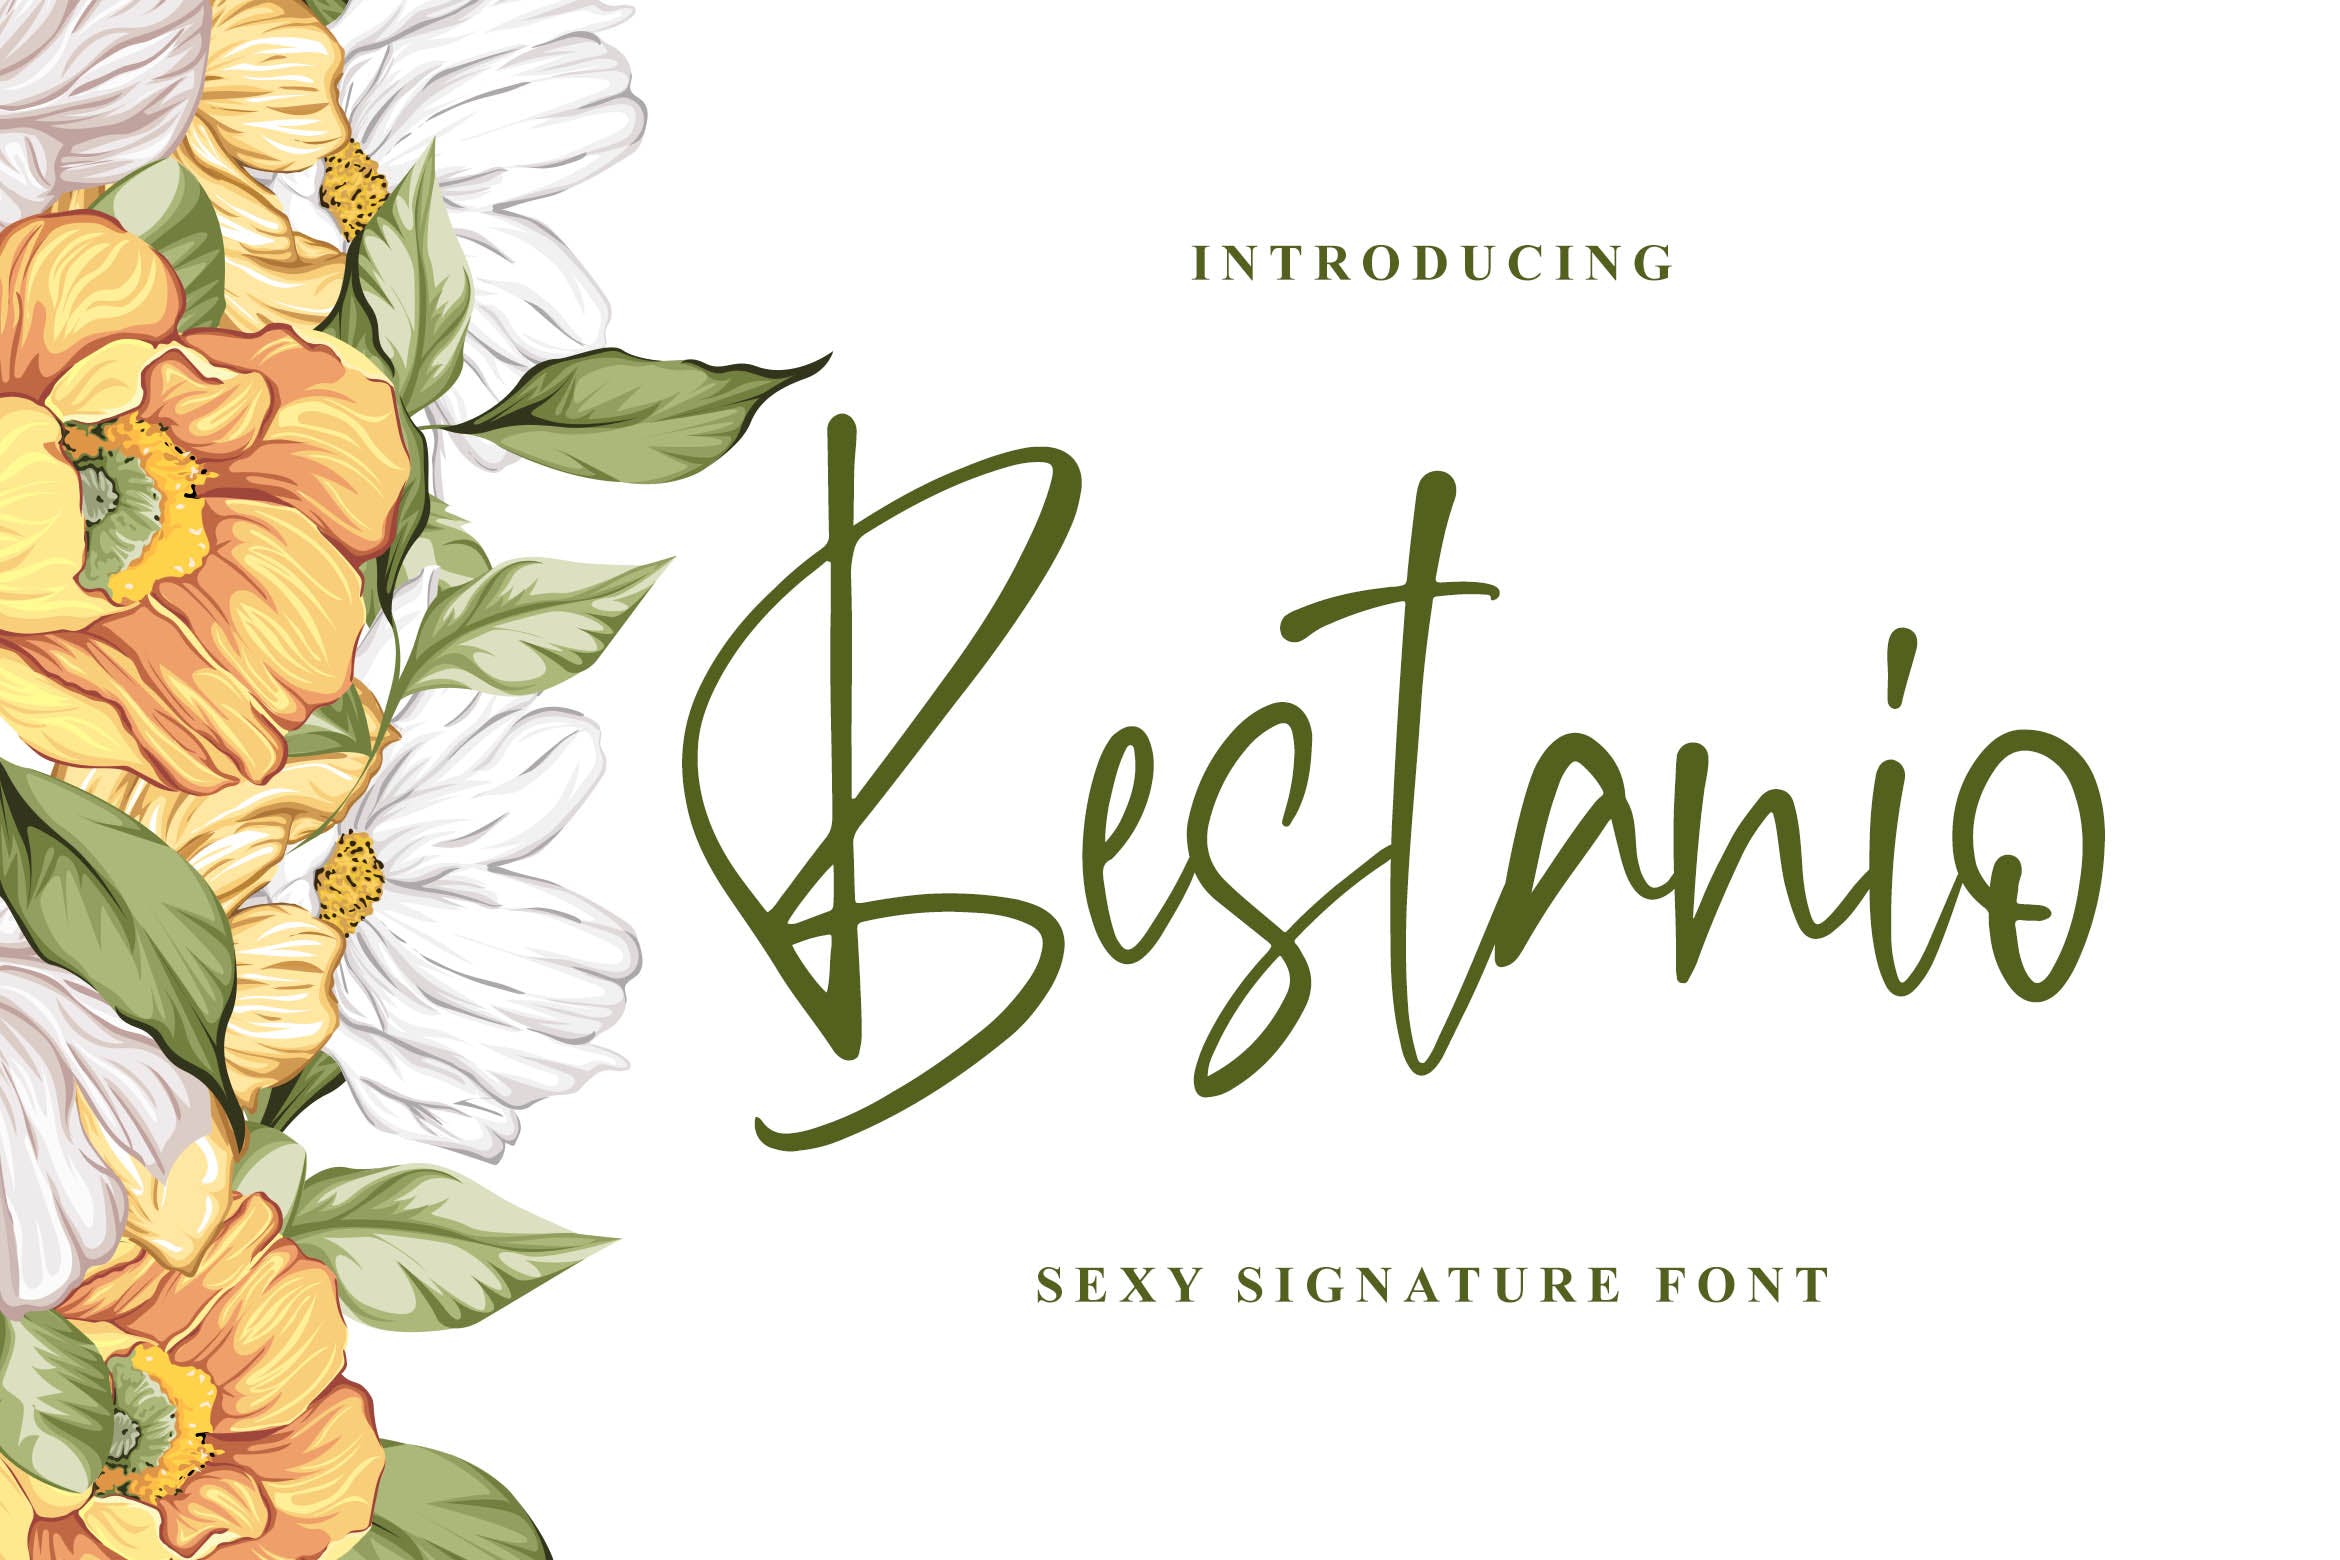 性感时尚英文签名字体素材库精选 Bestanio – Sexy Signature Font插图